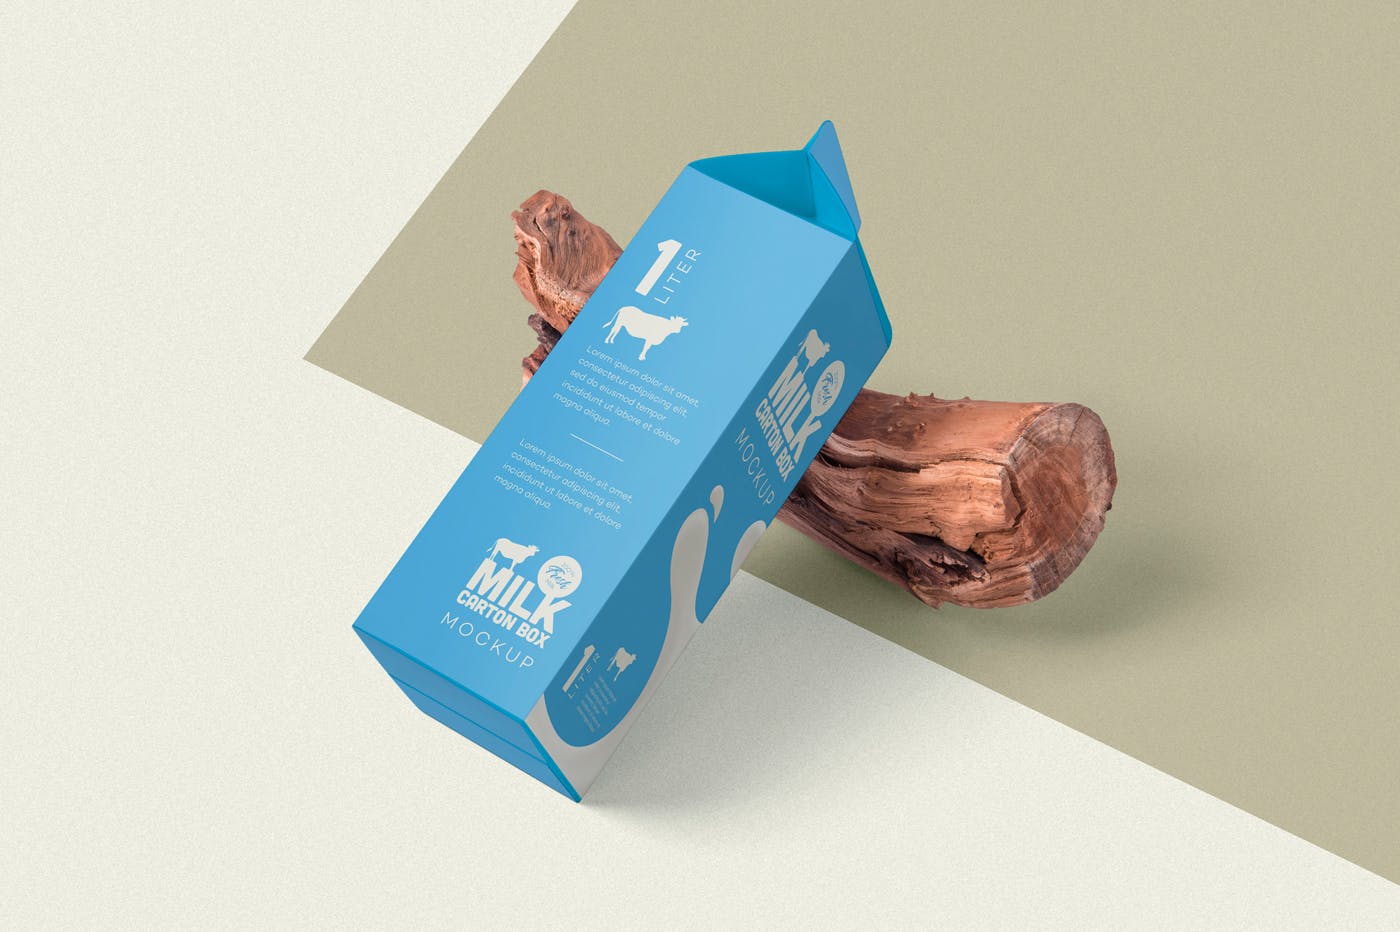 纸盒包装外观设计效果图样机 Juice Carton Box Packaging Mockups设计素材模板